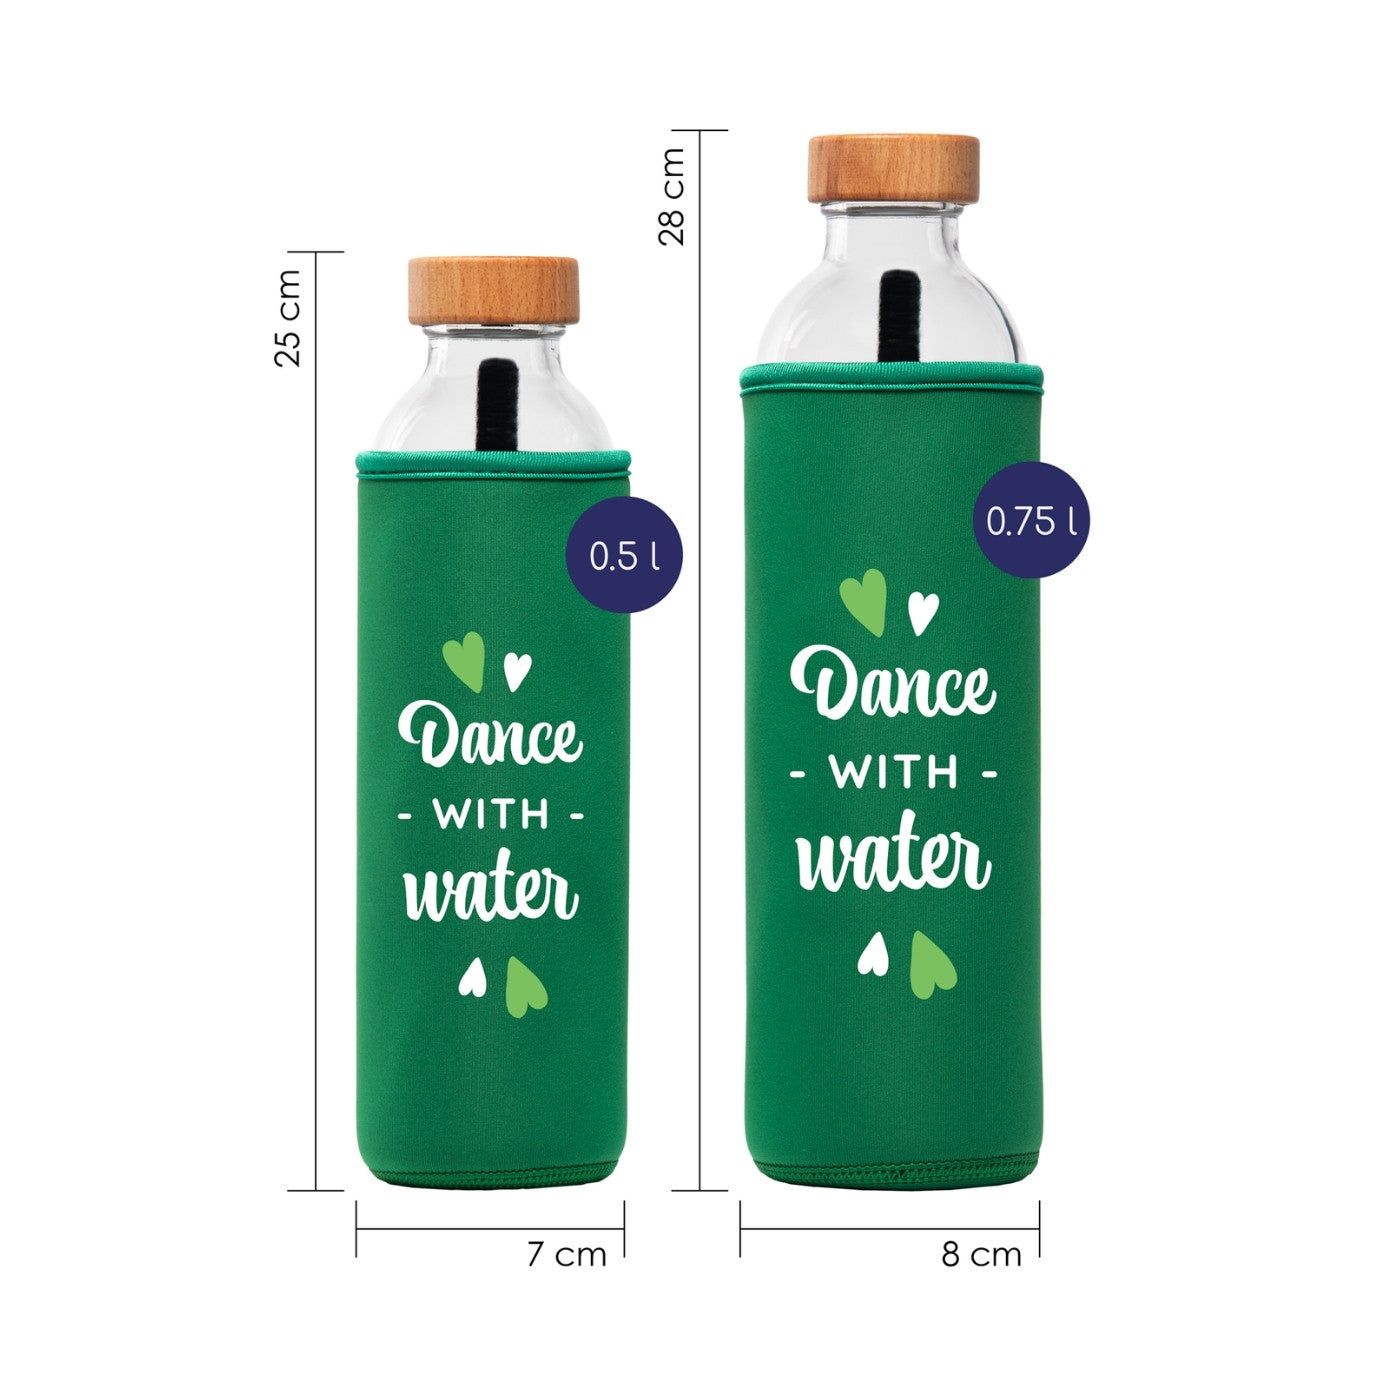 tamaños de botella de agua de cristal flaska con funda de neopreno verde y diseño letras dance